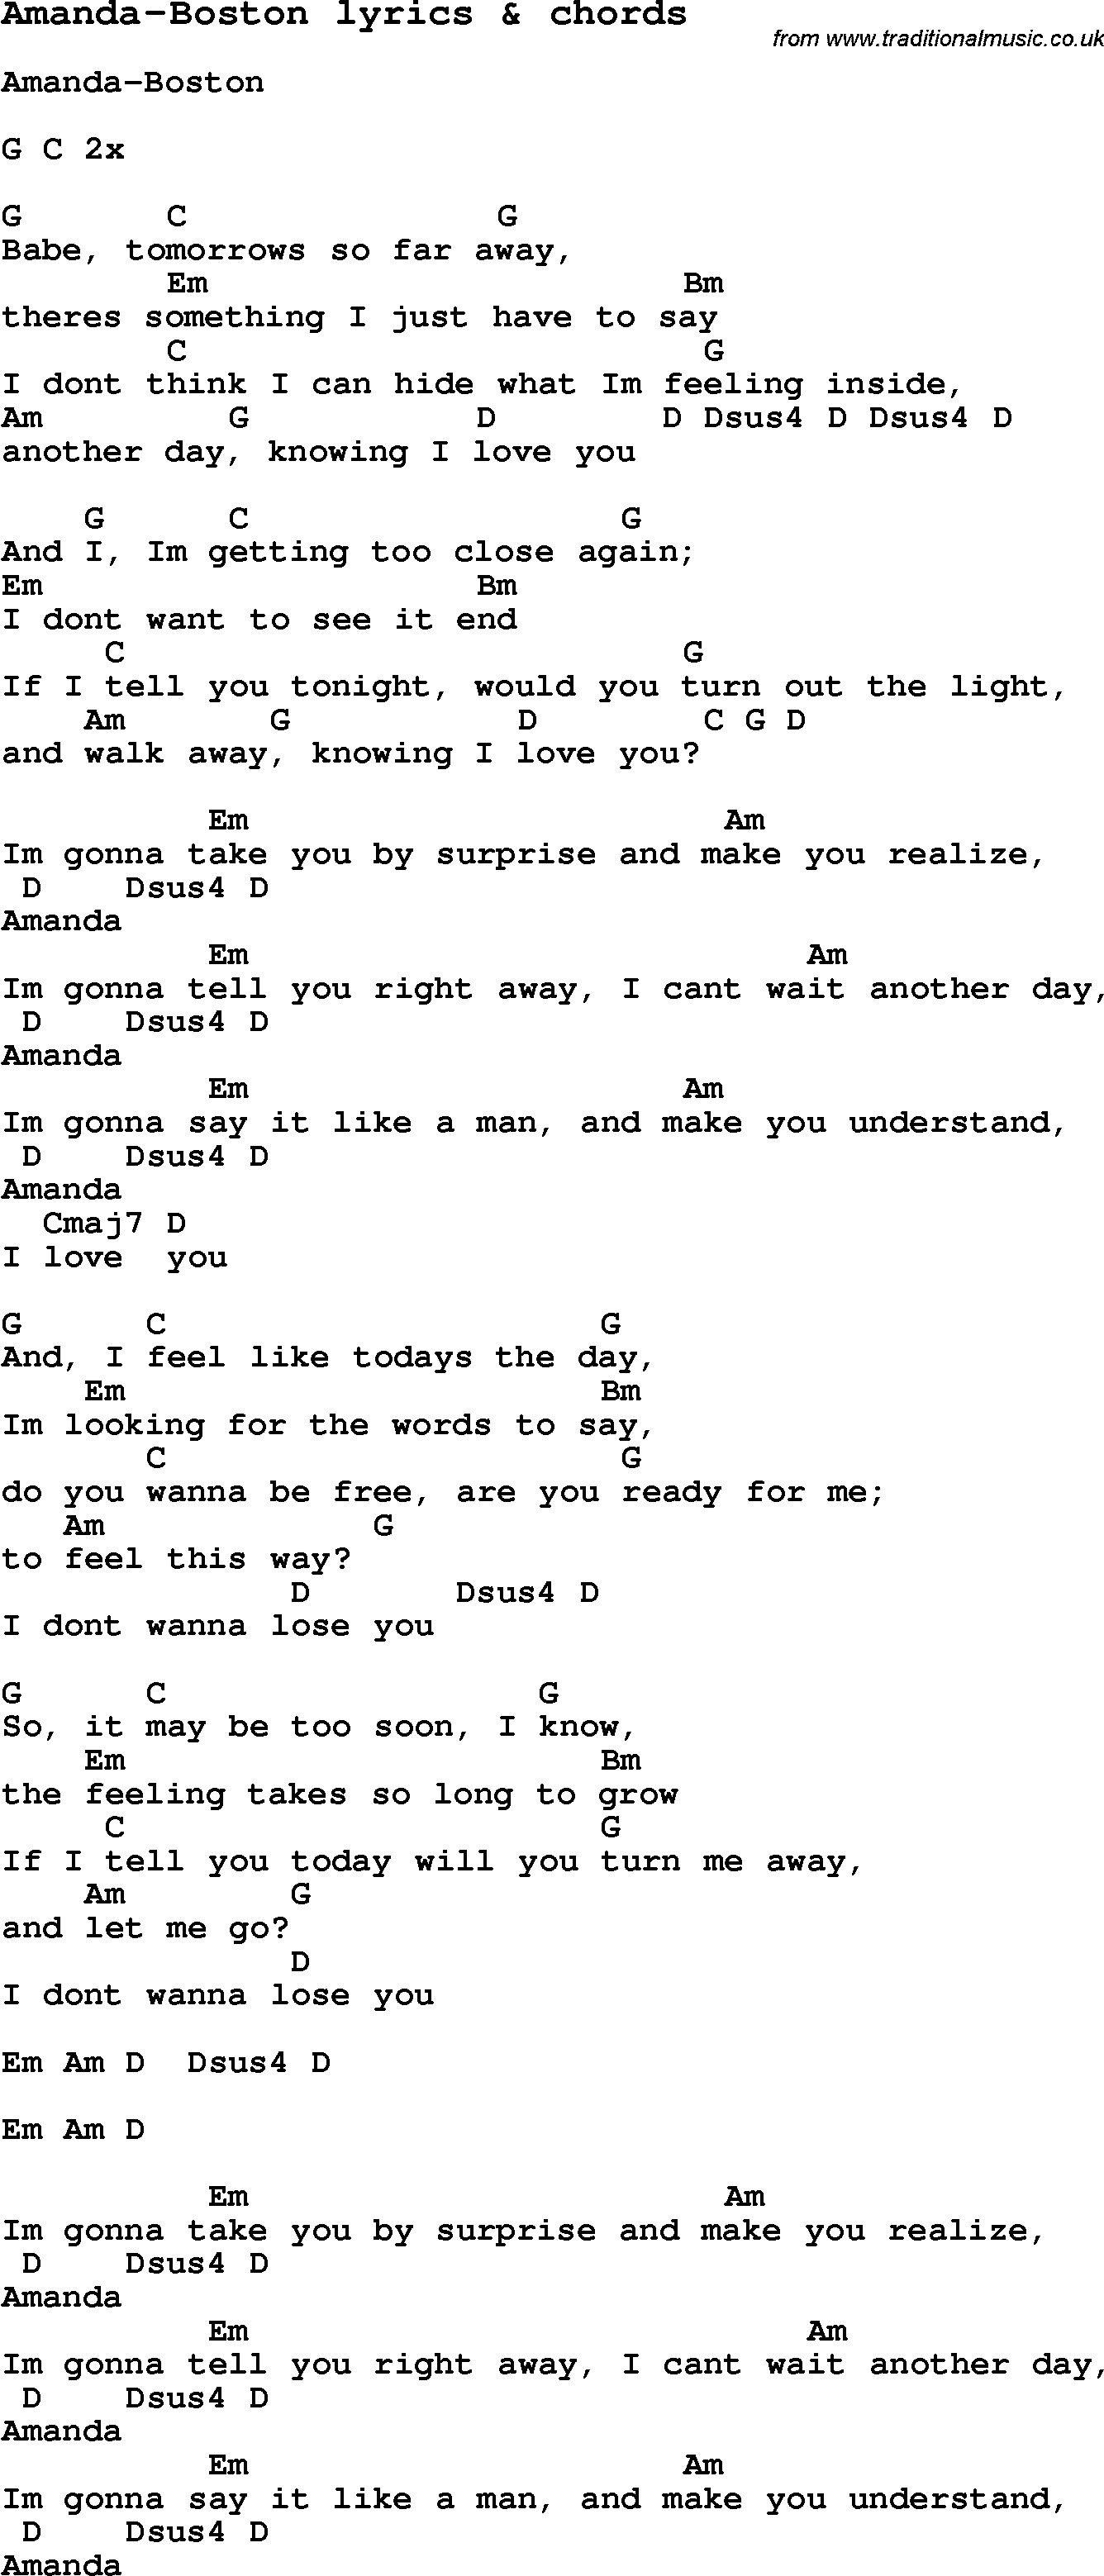 Love Song Lyrics for: Amanda-Boston with chords for Ukulele, Guitar Banjo etc.